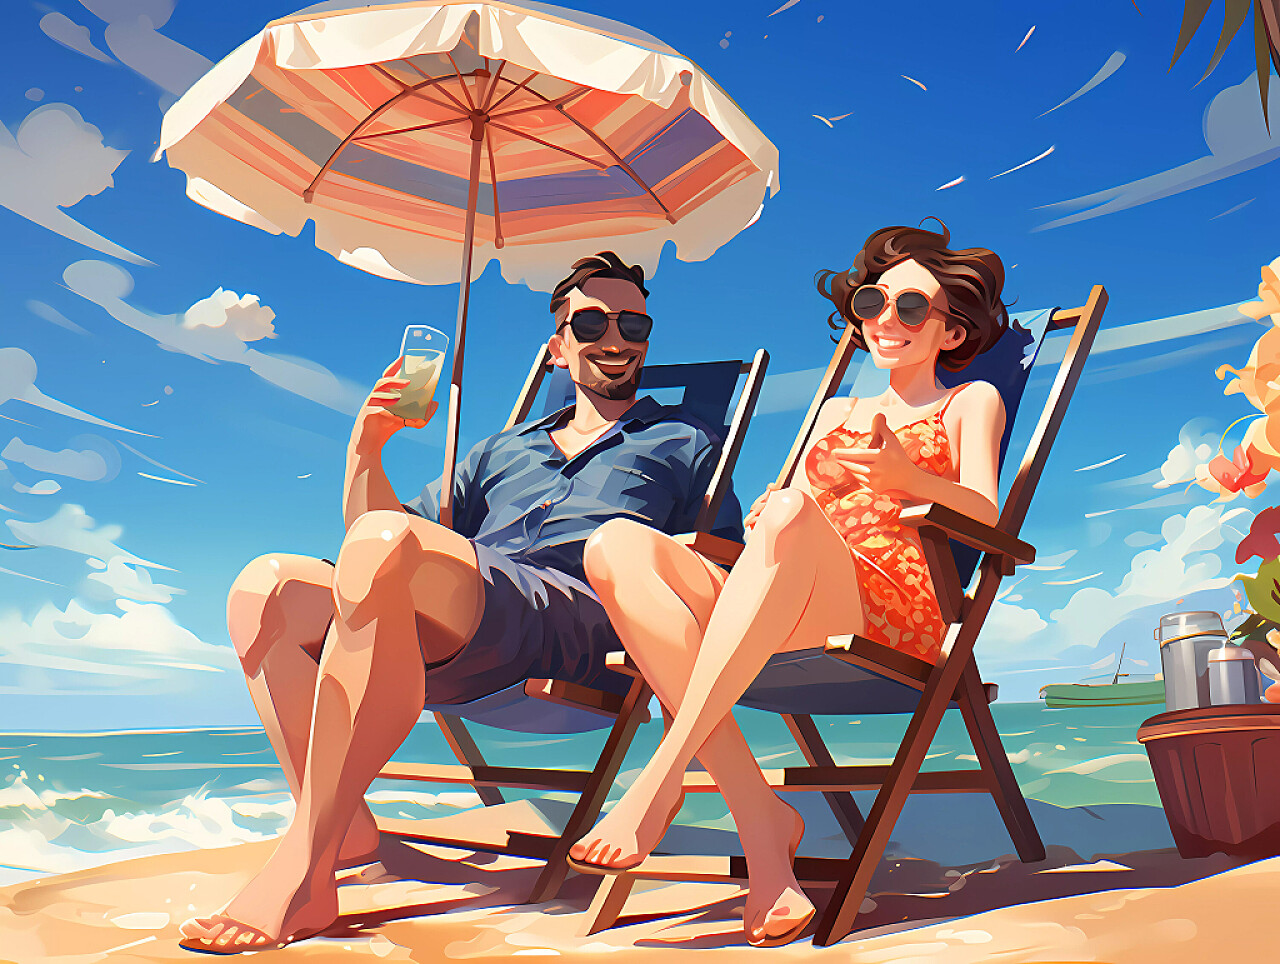 夏日沙滩海边浪漫情侣防晒伞日光浴场景